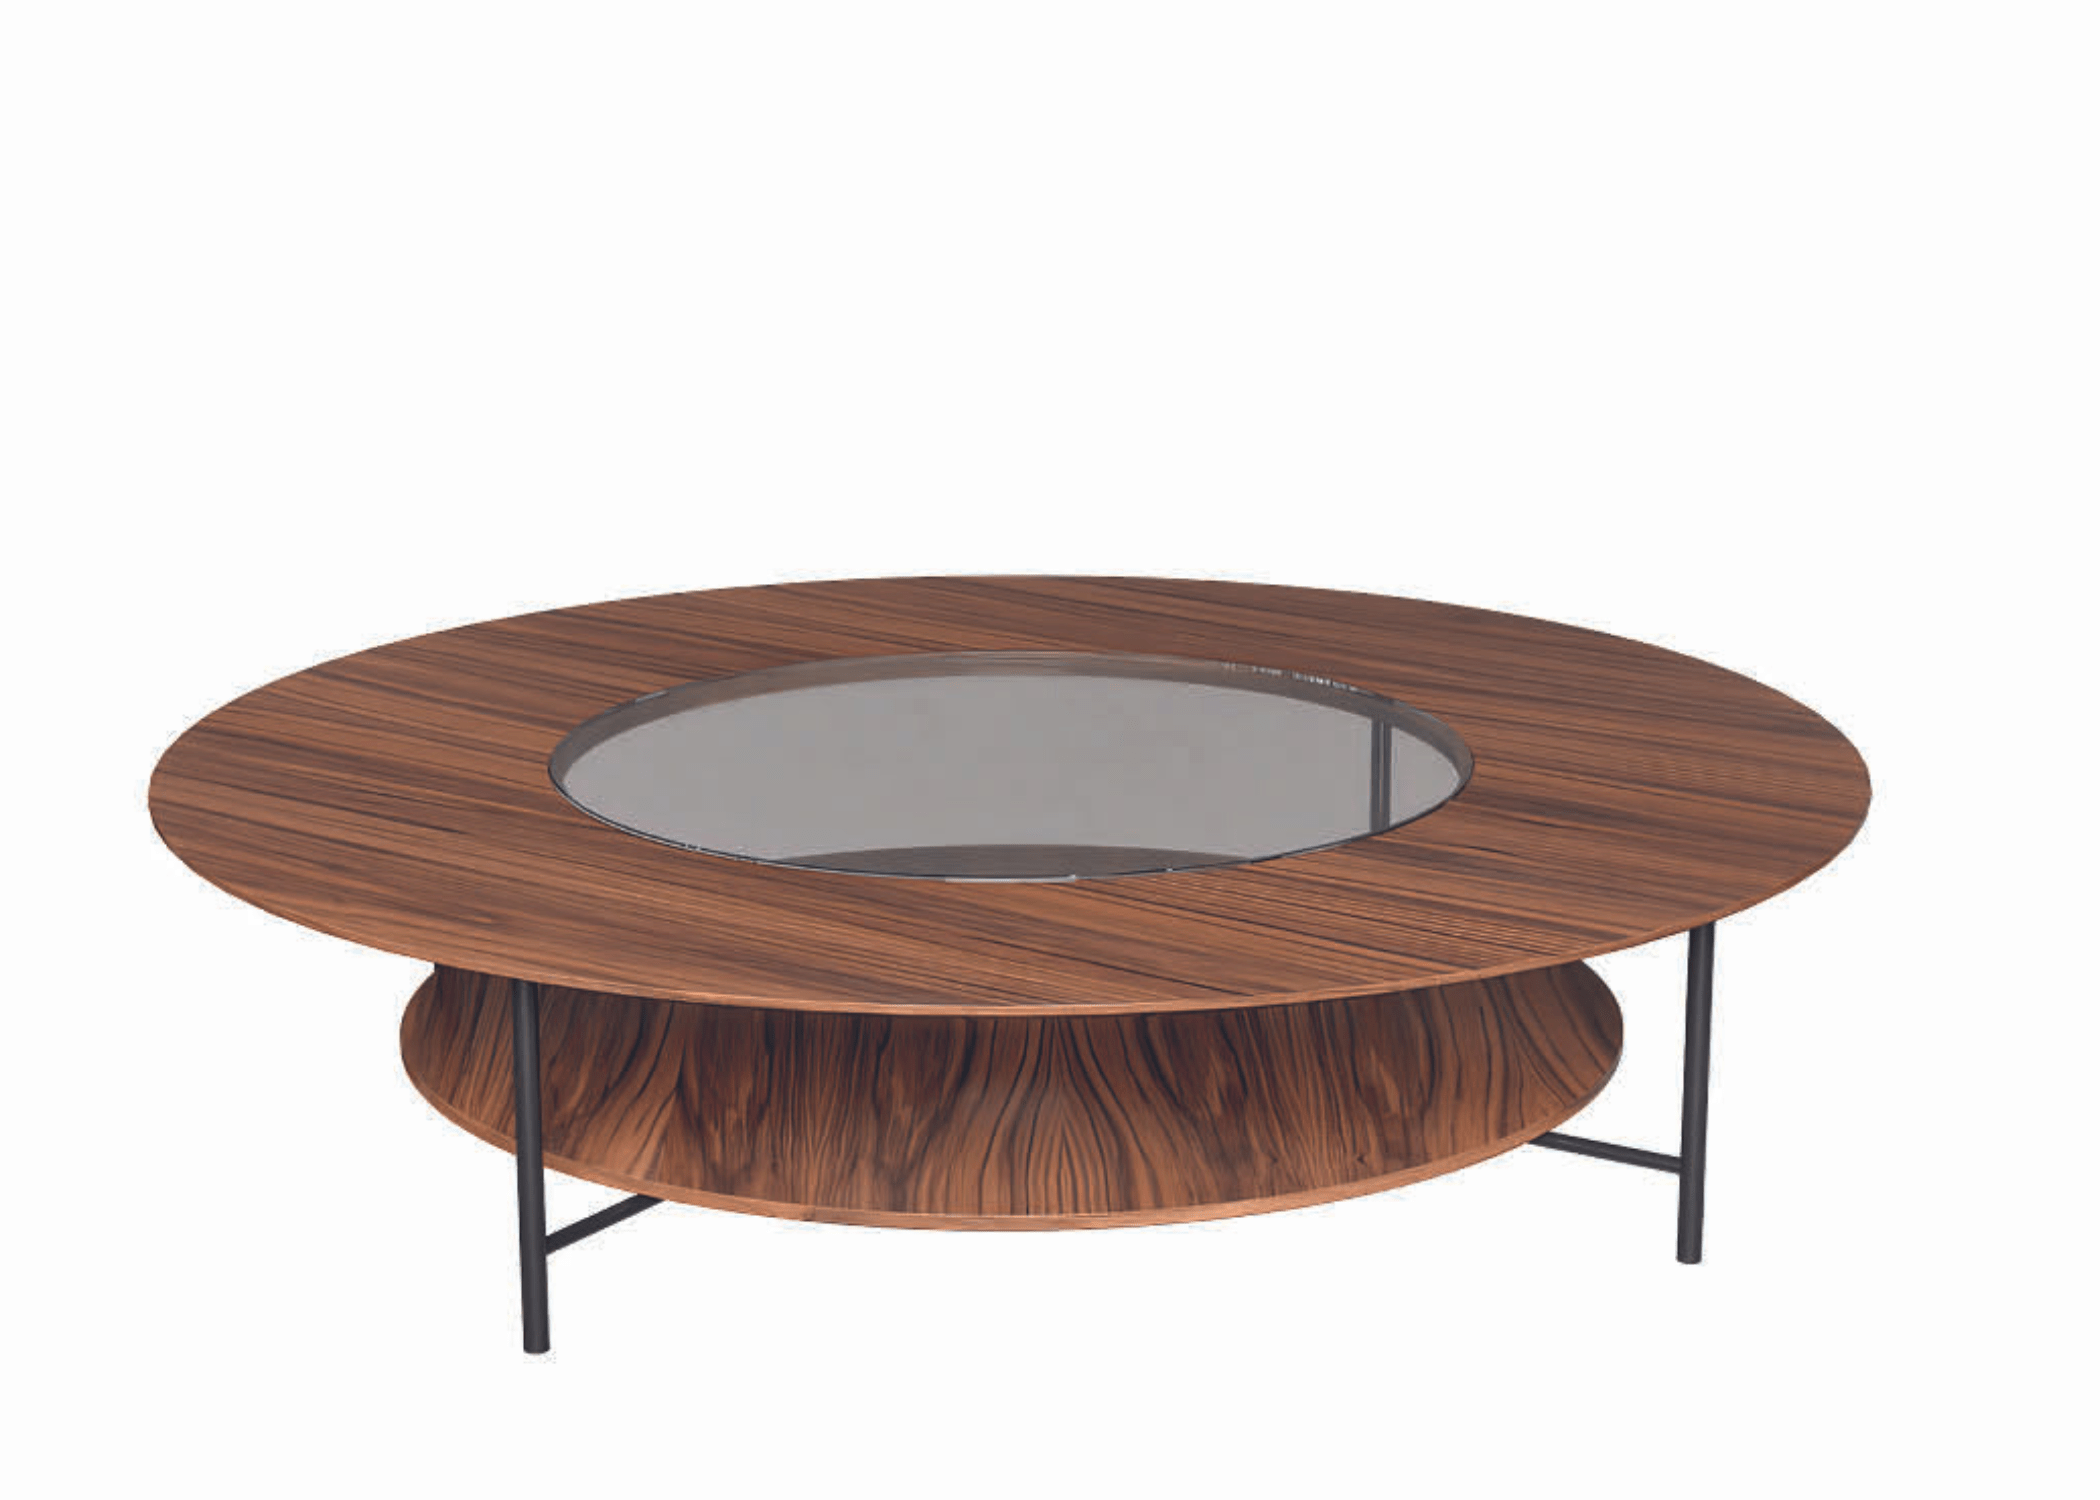 Design contemporâneo e elegante da mesa Sonar.